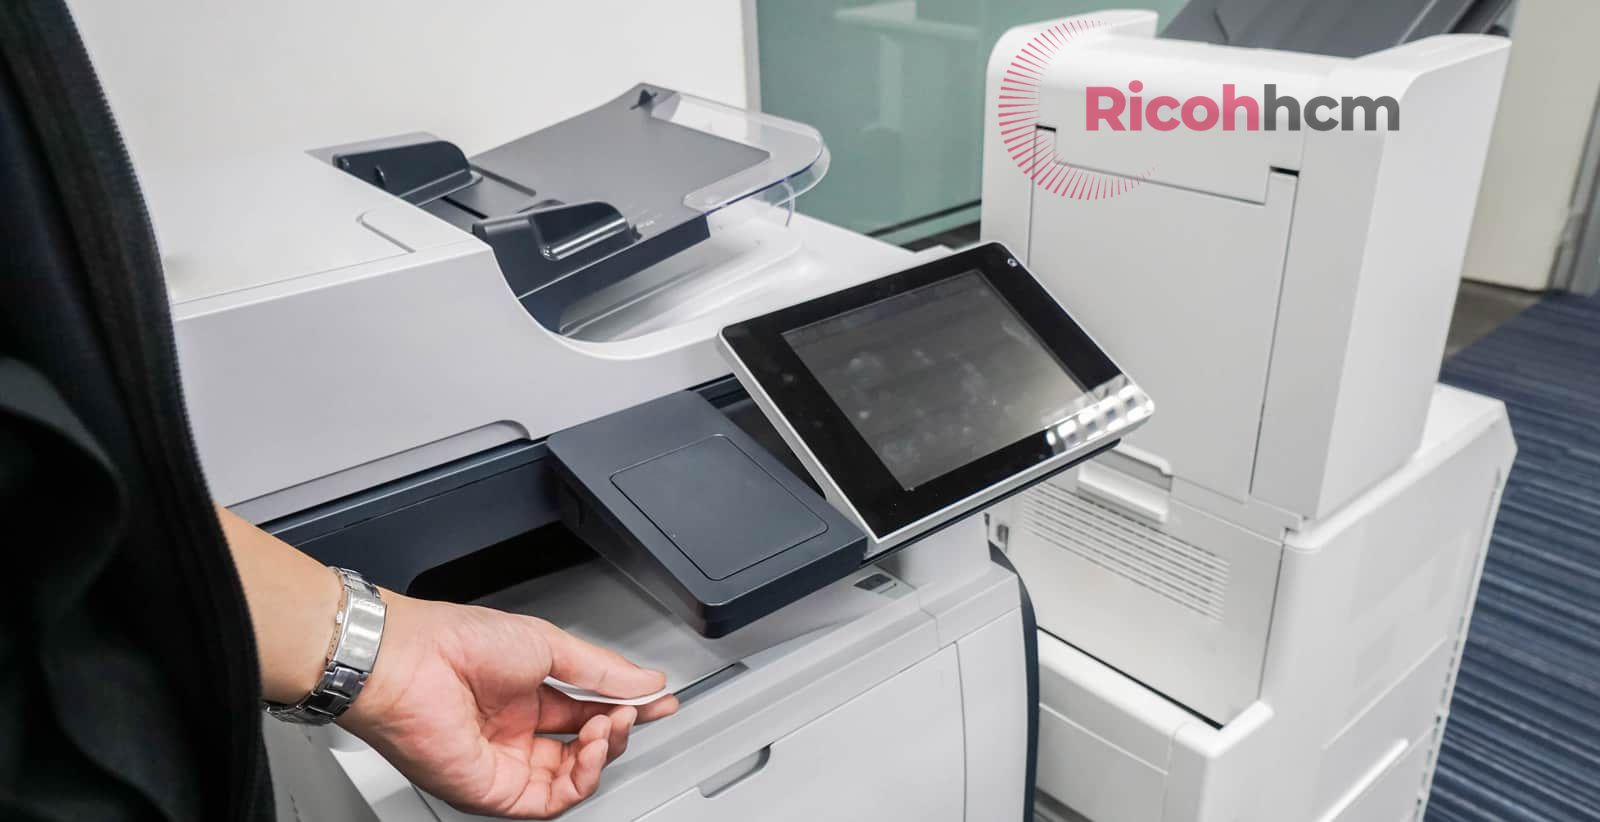 Lựa chọn Photo Đức Lan, khách hàng có thể hoàn toàn yên tâm trong vấn đề giá cả. Chúng tôi luôn hỗ trợ giá tốt nhất, cạnh tranh nhất trên thị trường bán máy photocopy quận 2 nếu quý khách mua máy photocopy với số lượng lớn.